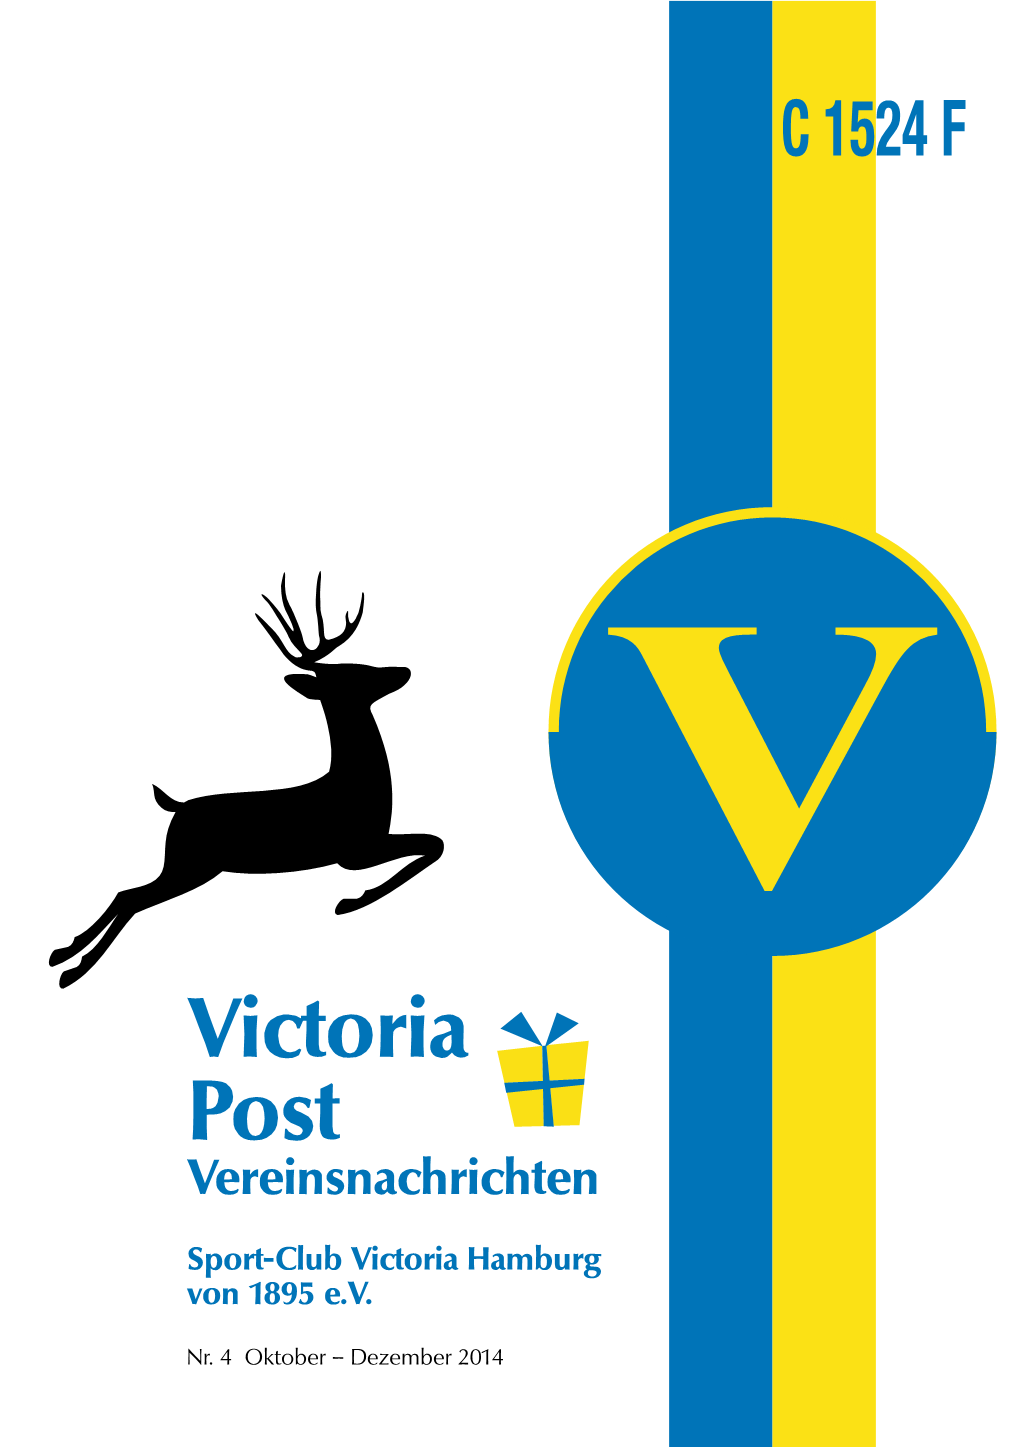 Victoria Post Vereinsnachrichten